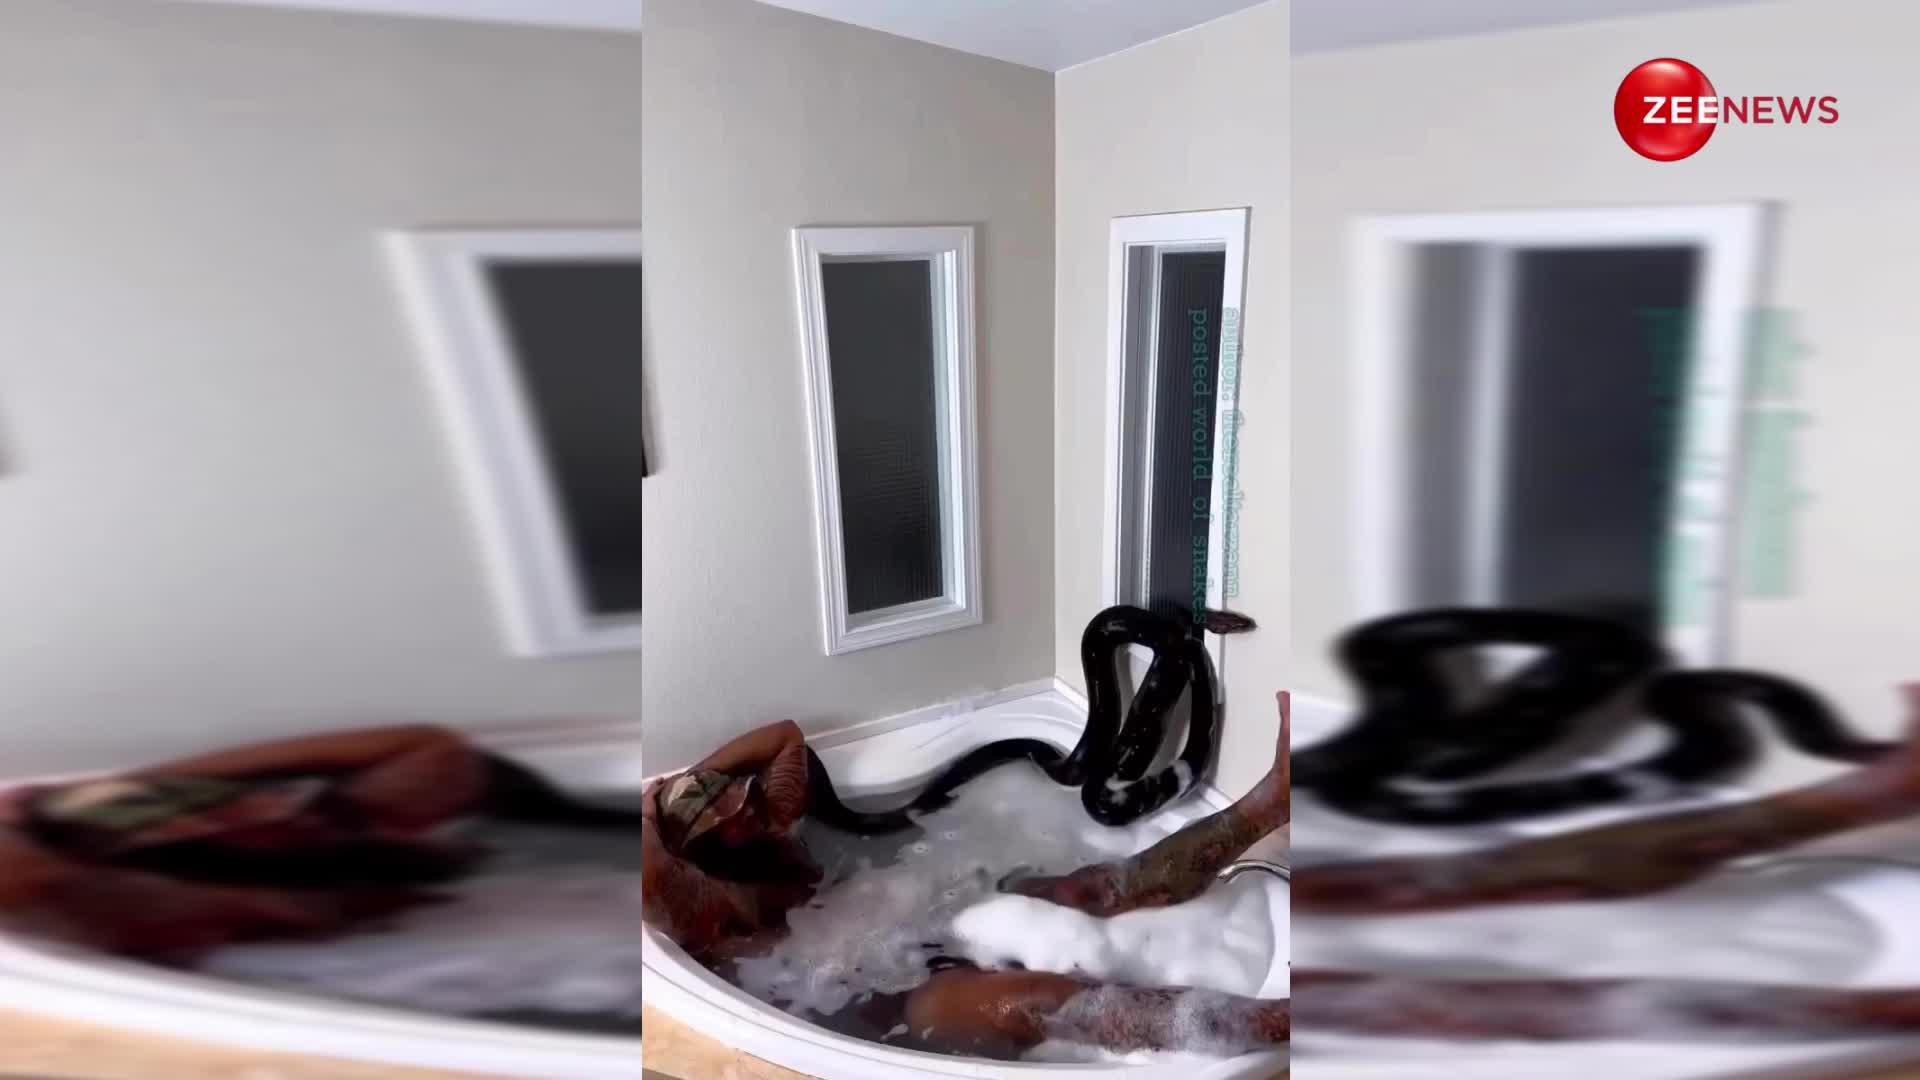 रोंगटे खड़े कर देगा ये वीडियो... अजगर को अपने साथ बाथटब में नहलाने लगा शख्स, देख लोगों का हिल गया दिमाग